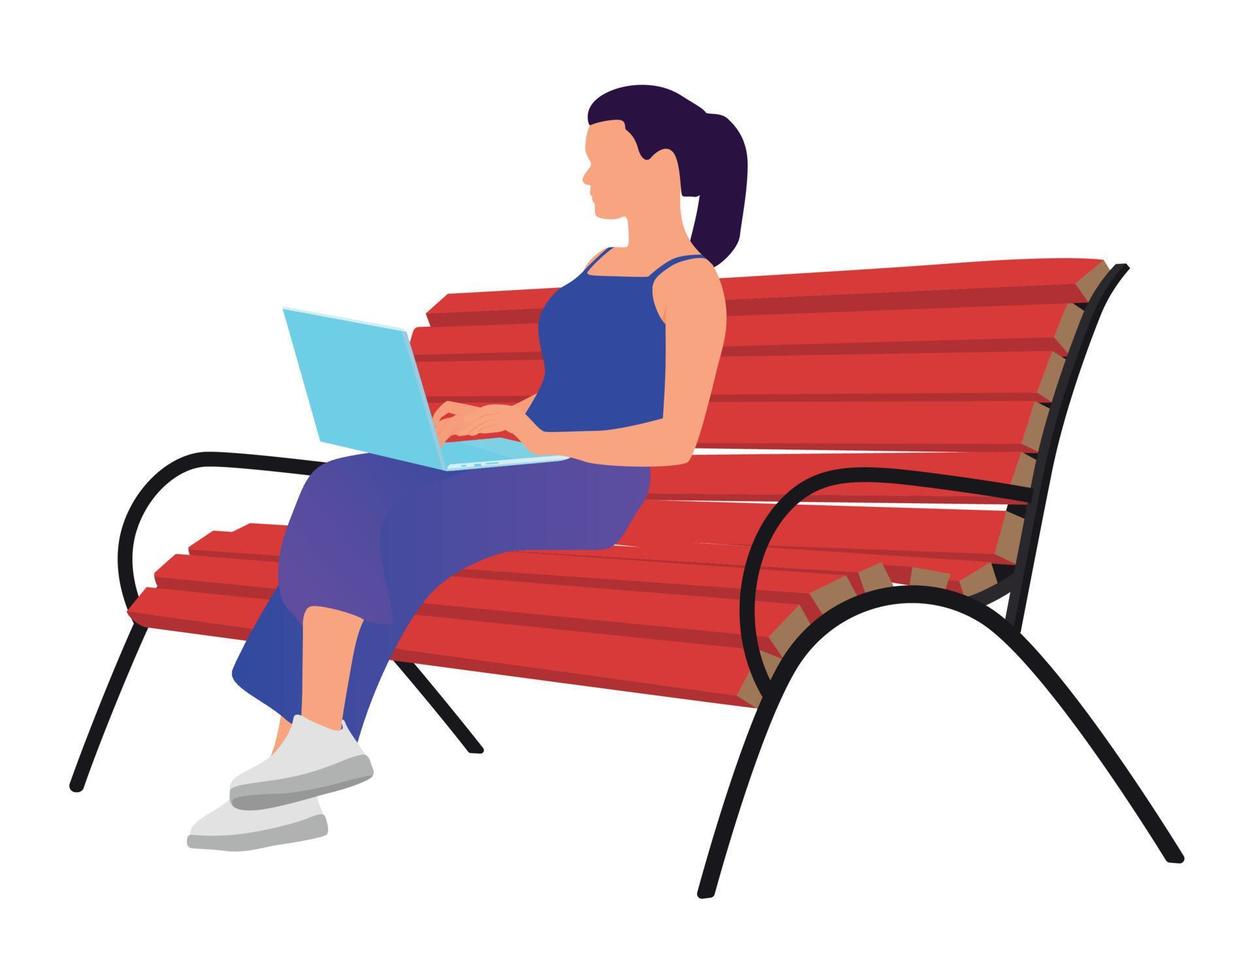 femme indépendante travaillant avec un ordinateur portable assis sur le banc dans l'illustration vectorielle plane du parc vecteur